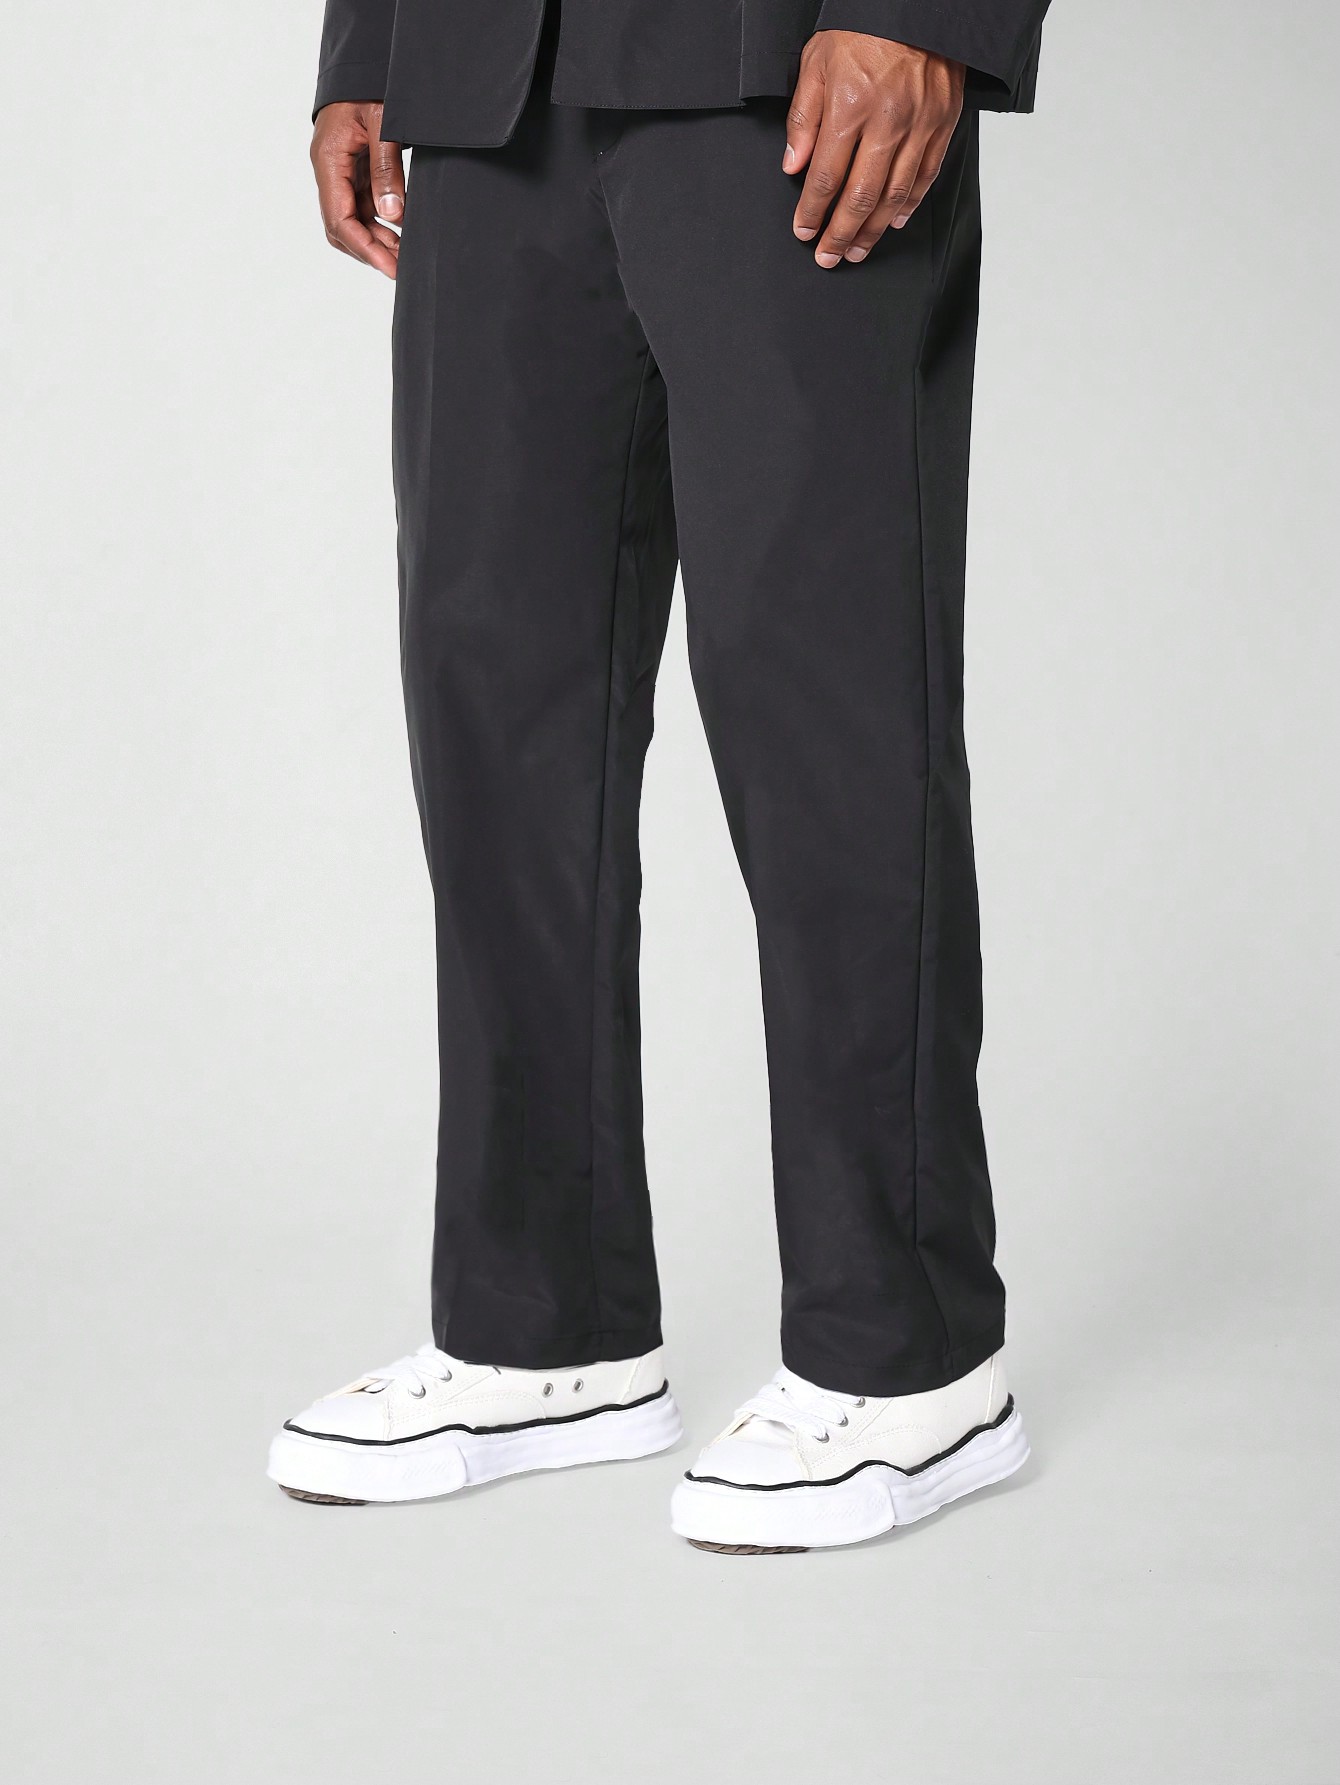 men s fitness jogging sport suit trouser SUMWON Нейлоновые брюки для костюма, черный